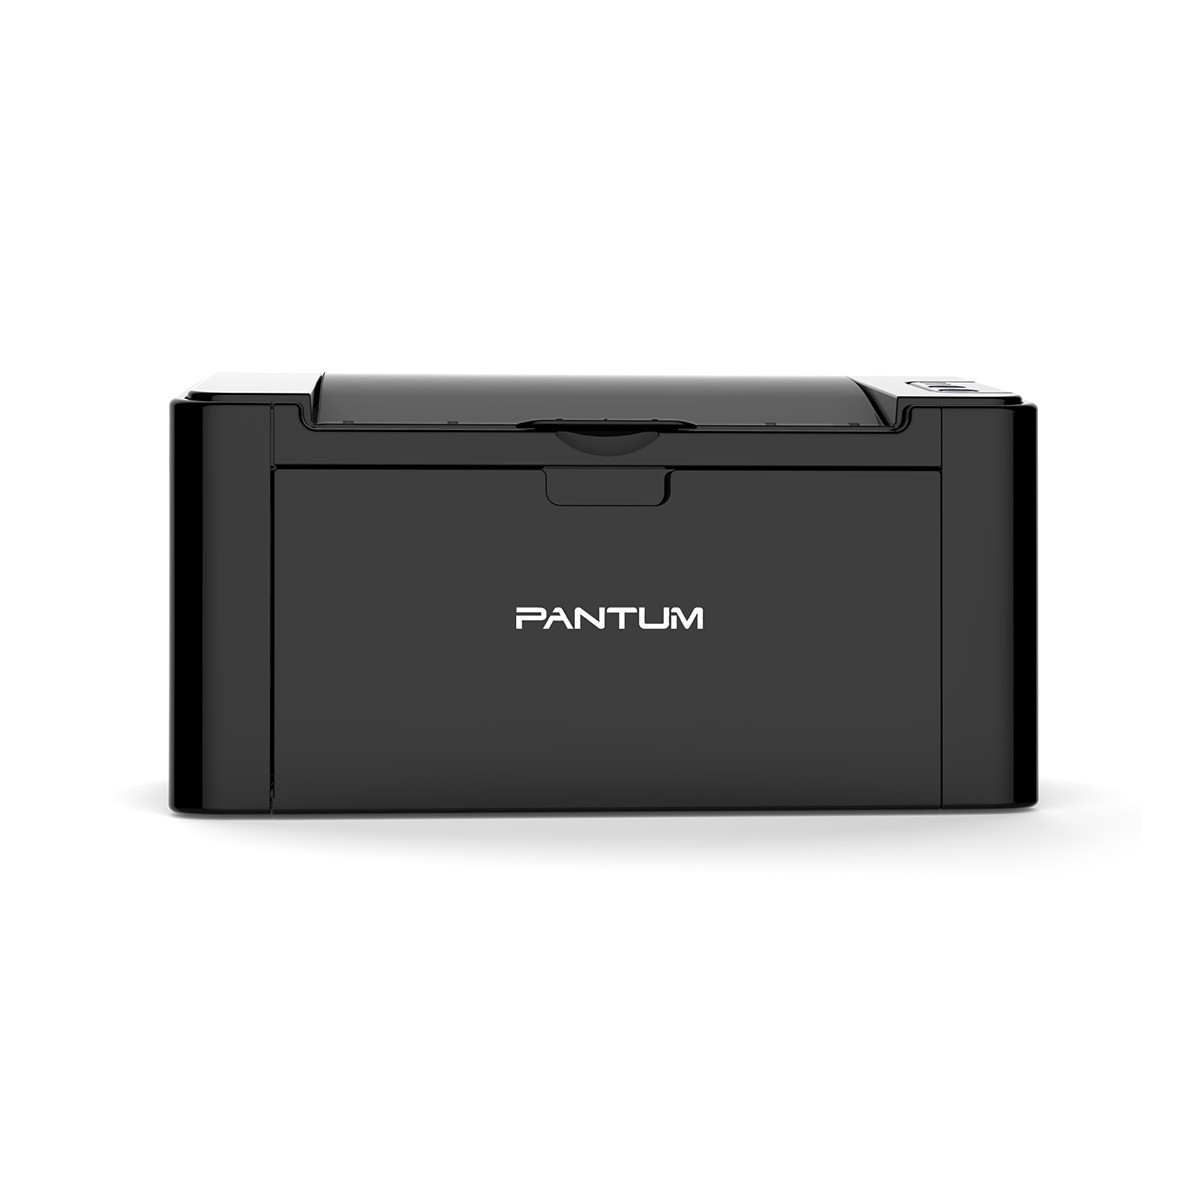 Принтер лазерный Pantum P2500W, черно-белая печать, 22 стр/мин, 1200x1200 dpi, 128Мб RAM, USB, Wi-Fi